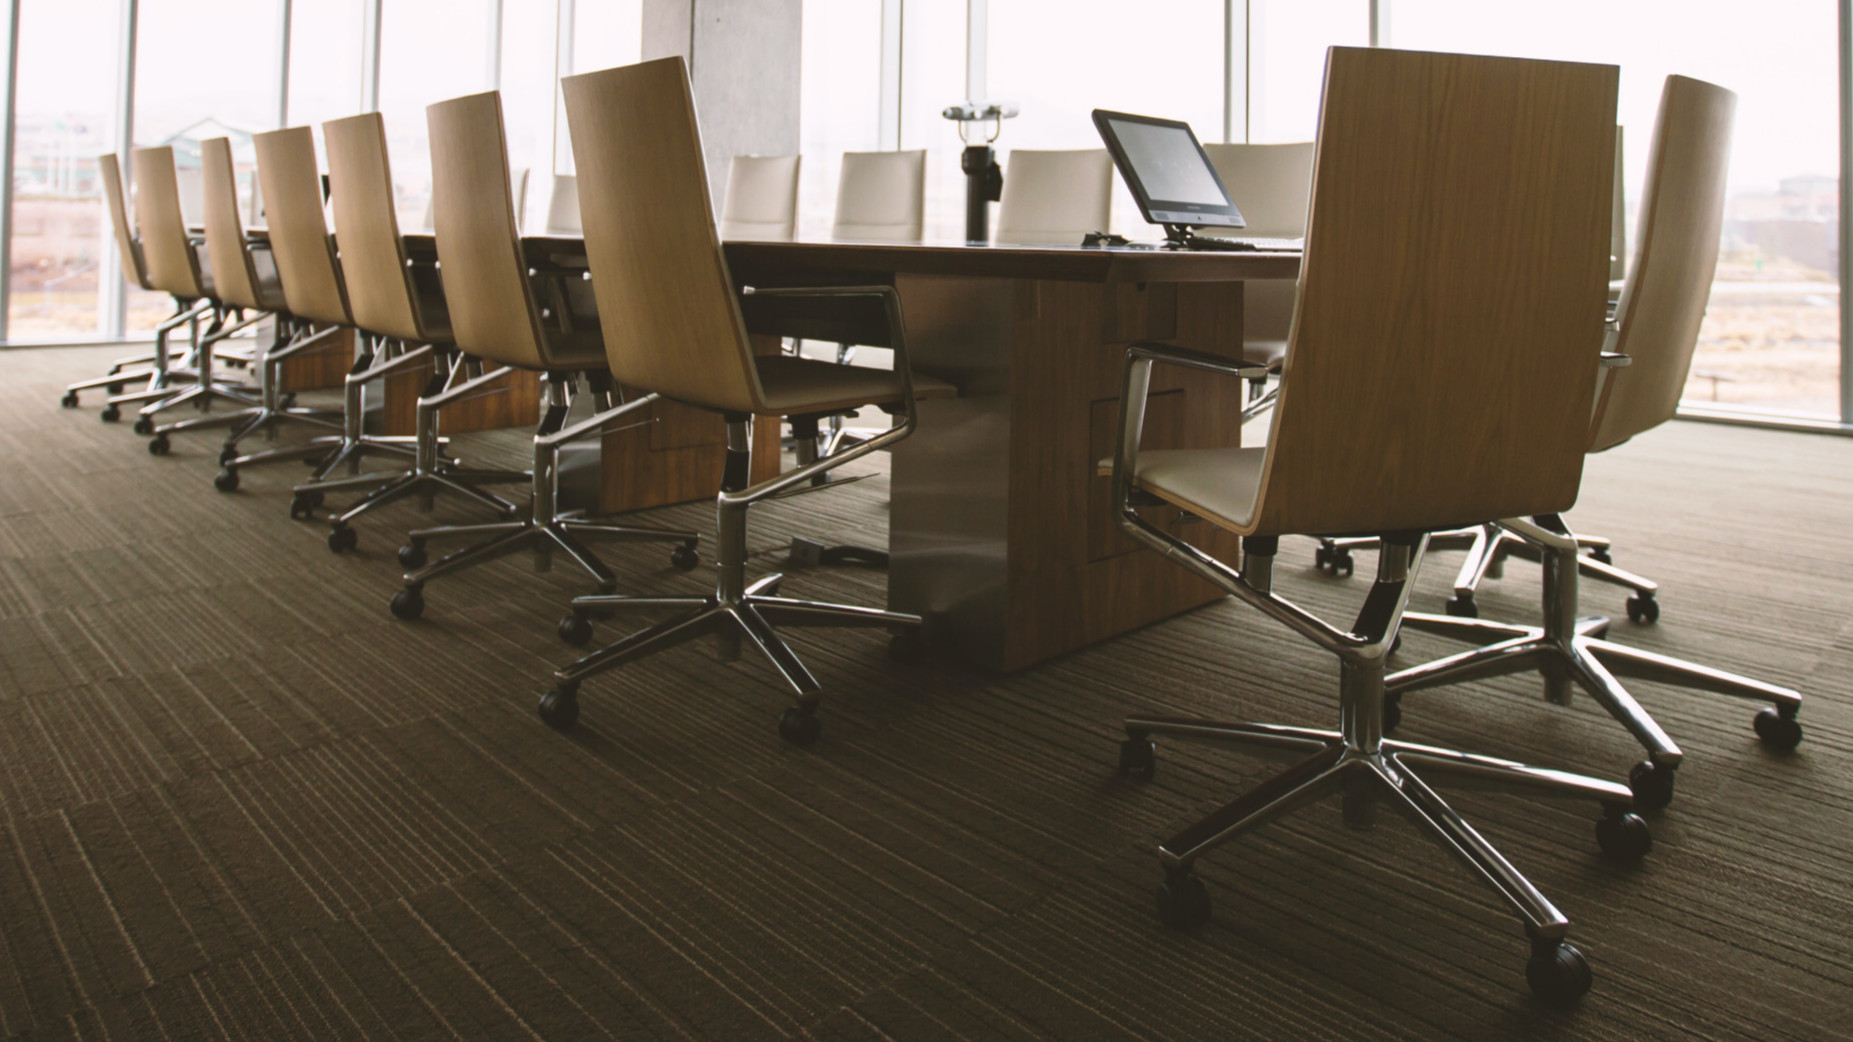 Board Room: Konferenztisch mit Stühlen vor Fensterfront. Webinarserie von hkp/// group und Directors Academy zu den Grundlagen der Aufsichtsratsorganisation und -tätigkeit.